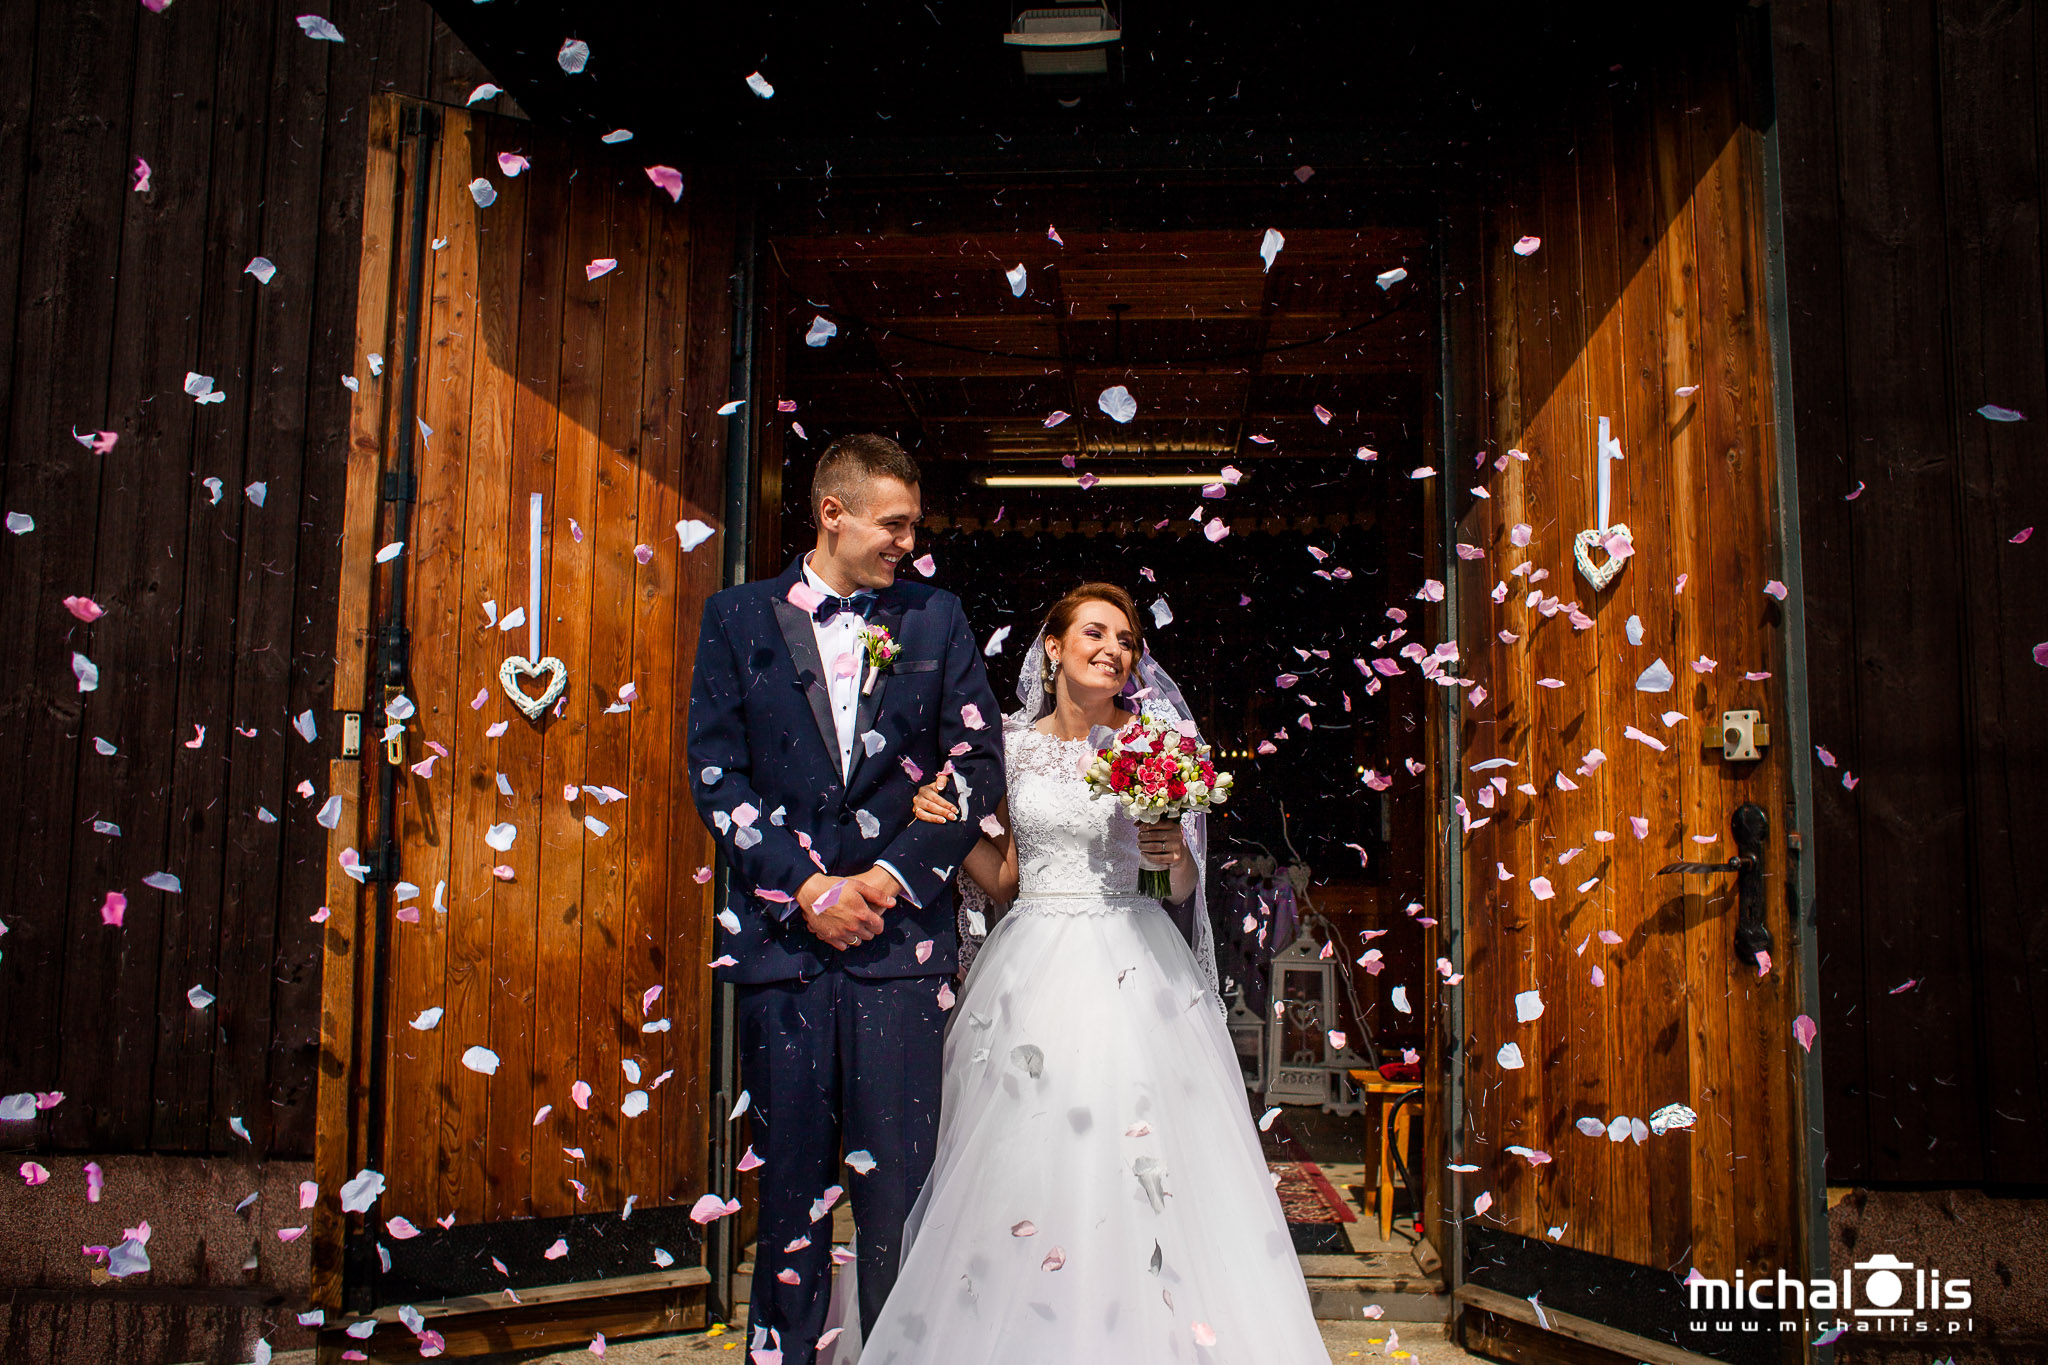 7 pomysłów na wyjście z kościoła, konfetti na wyjście z kościoła para młoda ślub tuby z konfetti płatki róż różowe płatki